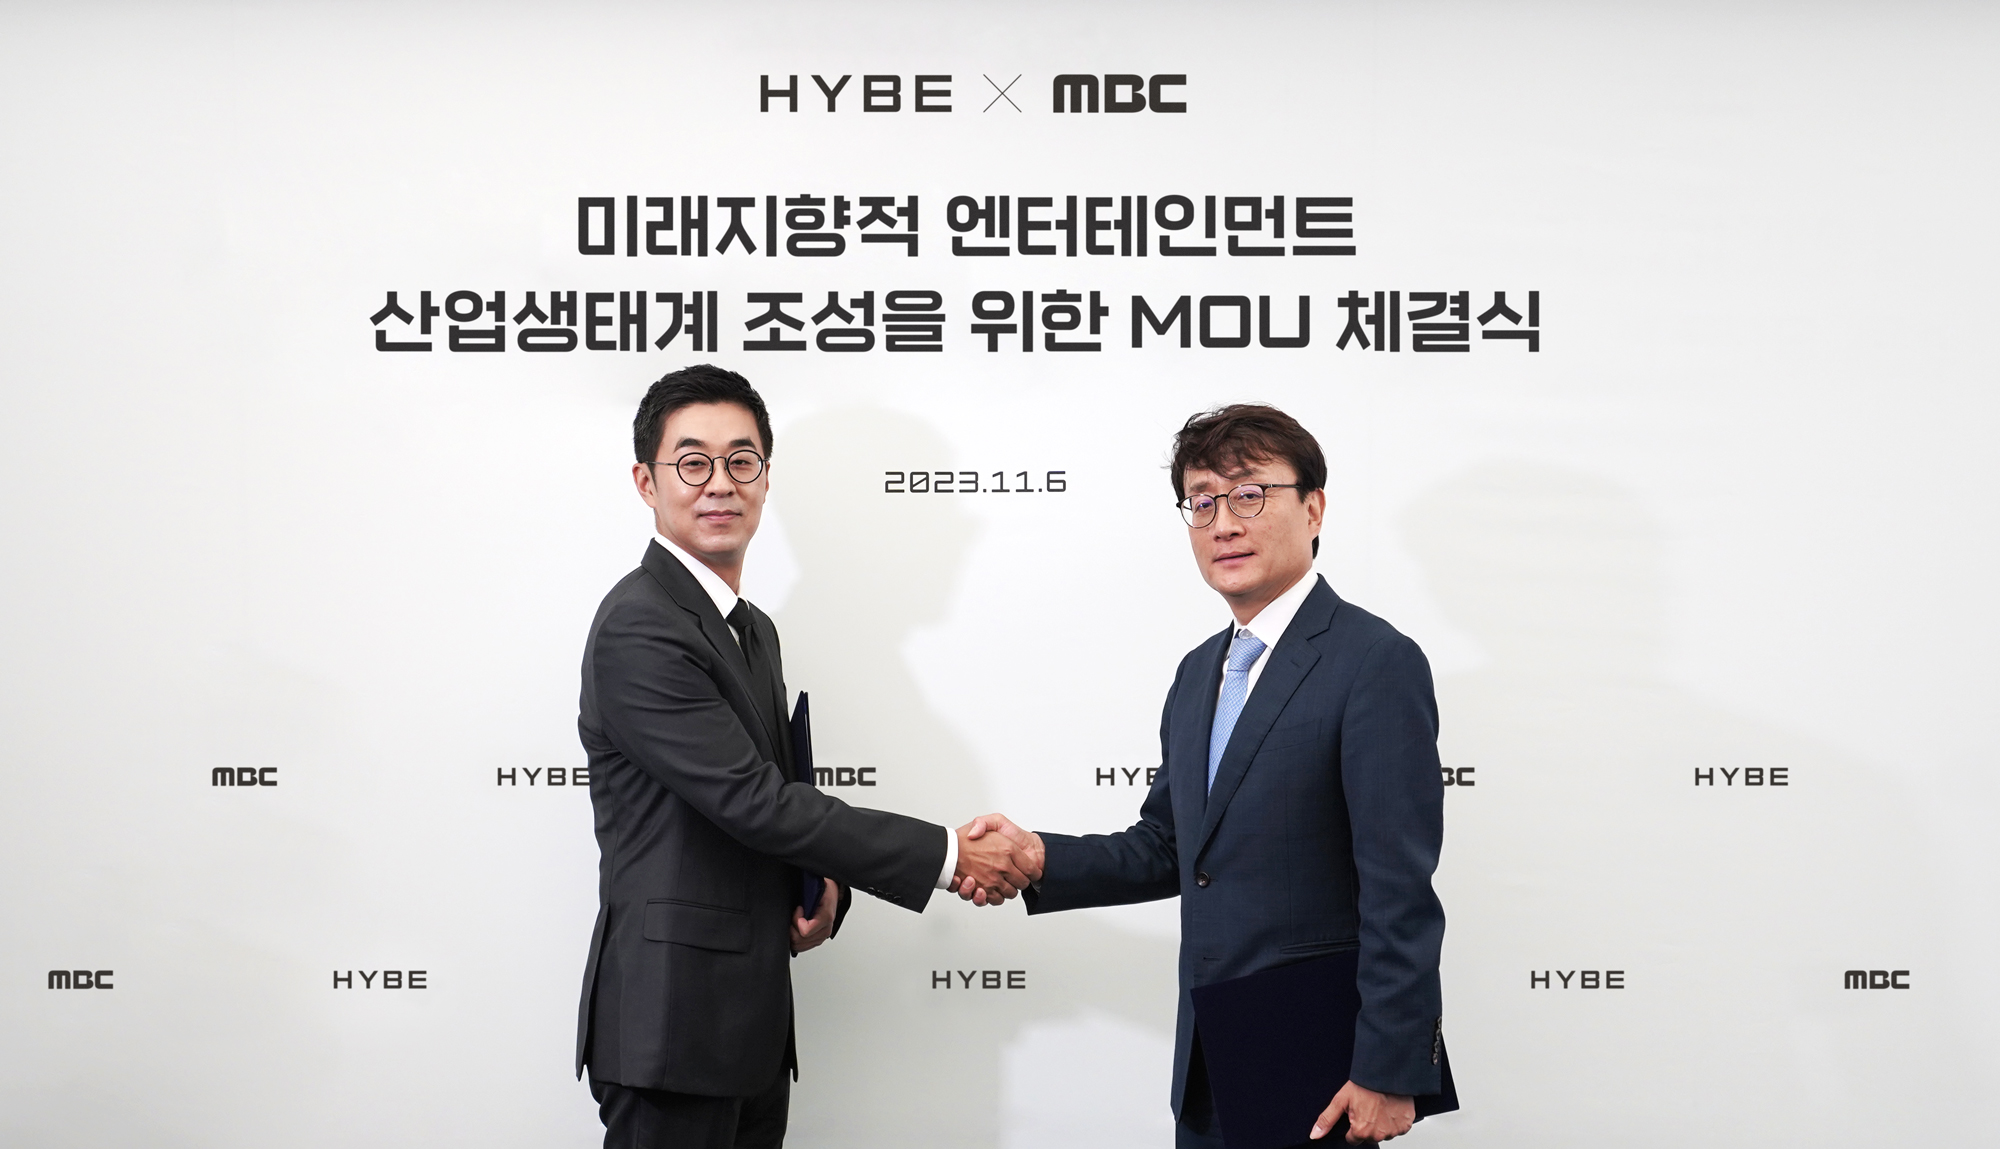 하이브(HYBE) & MBC 업무협약 체결